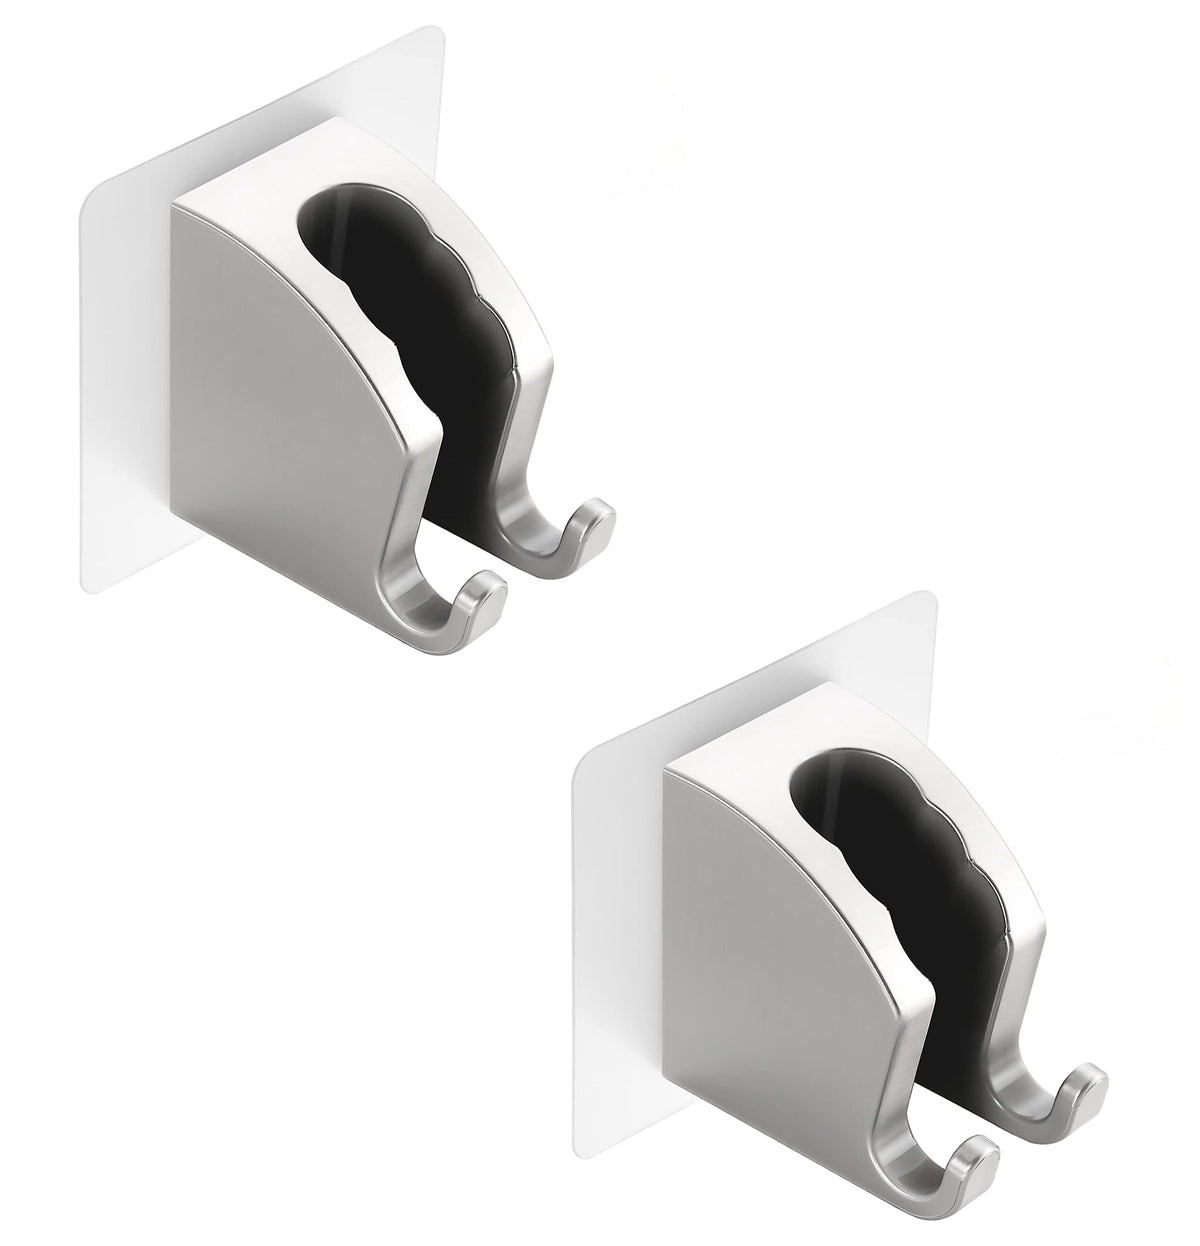 Adorila 2 Pack Shower Head Holder Wall Mount, Adjustable Handheld Shower Holder with 2 Hanger Hooks, Adhesive Shower Wand Holder for Bathroom